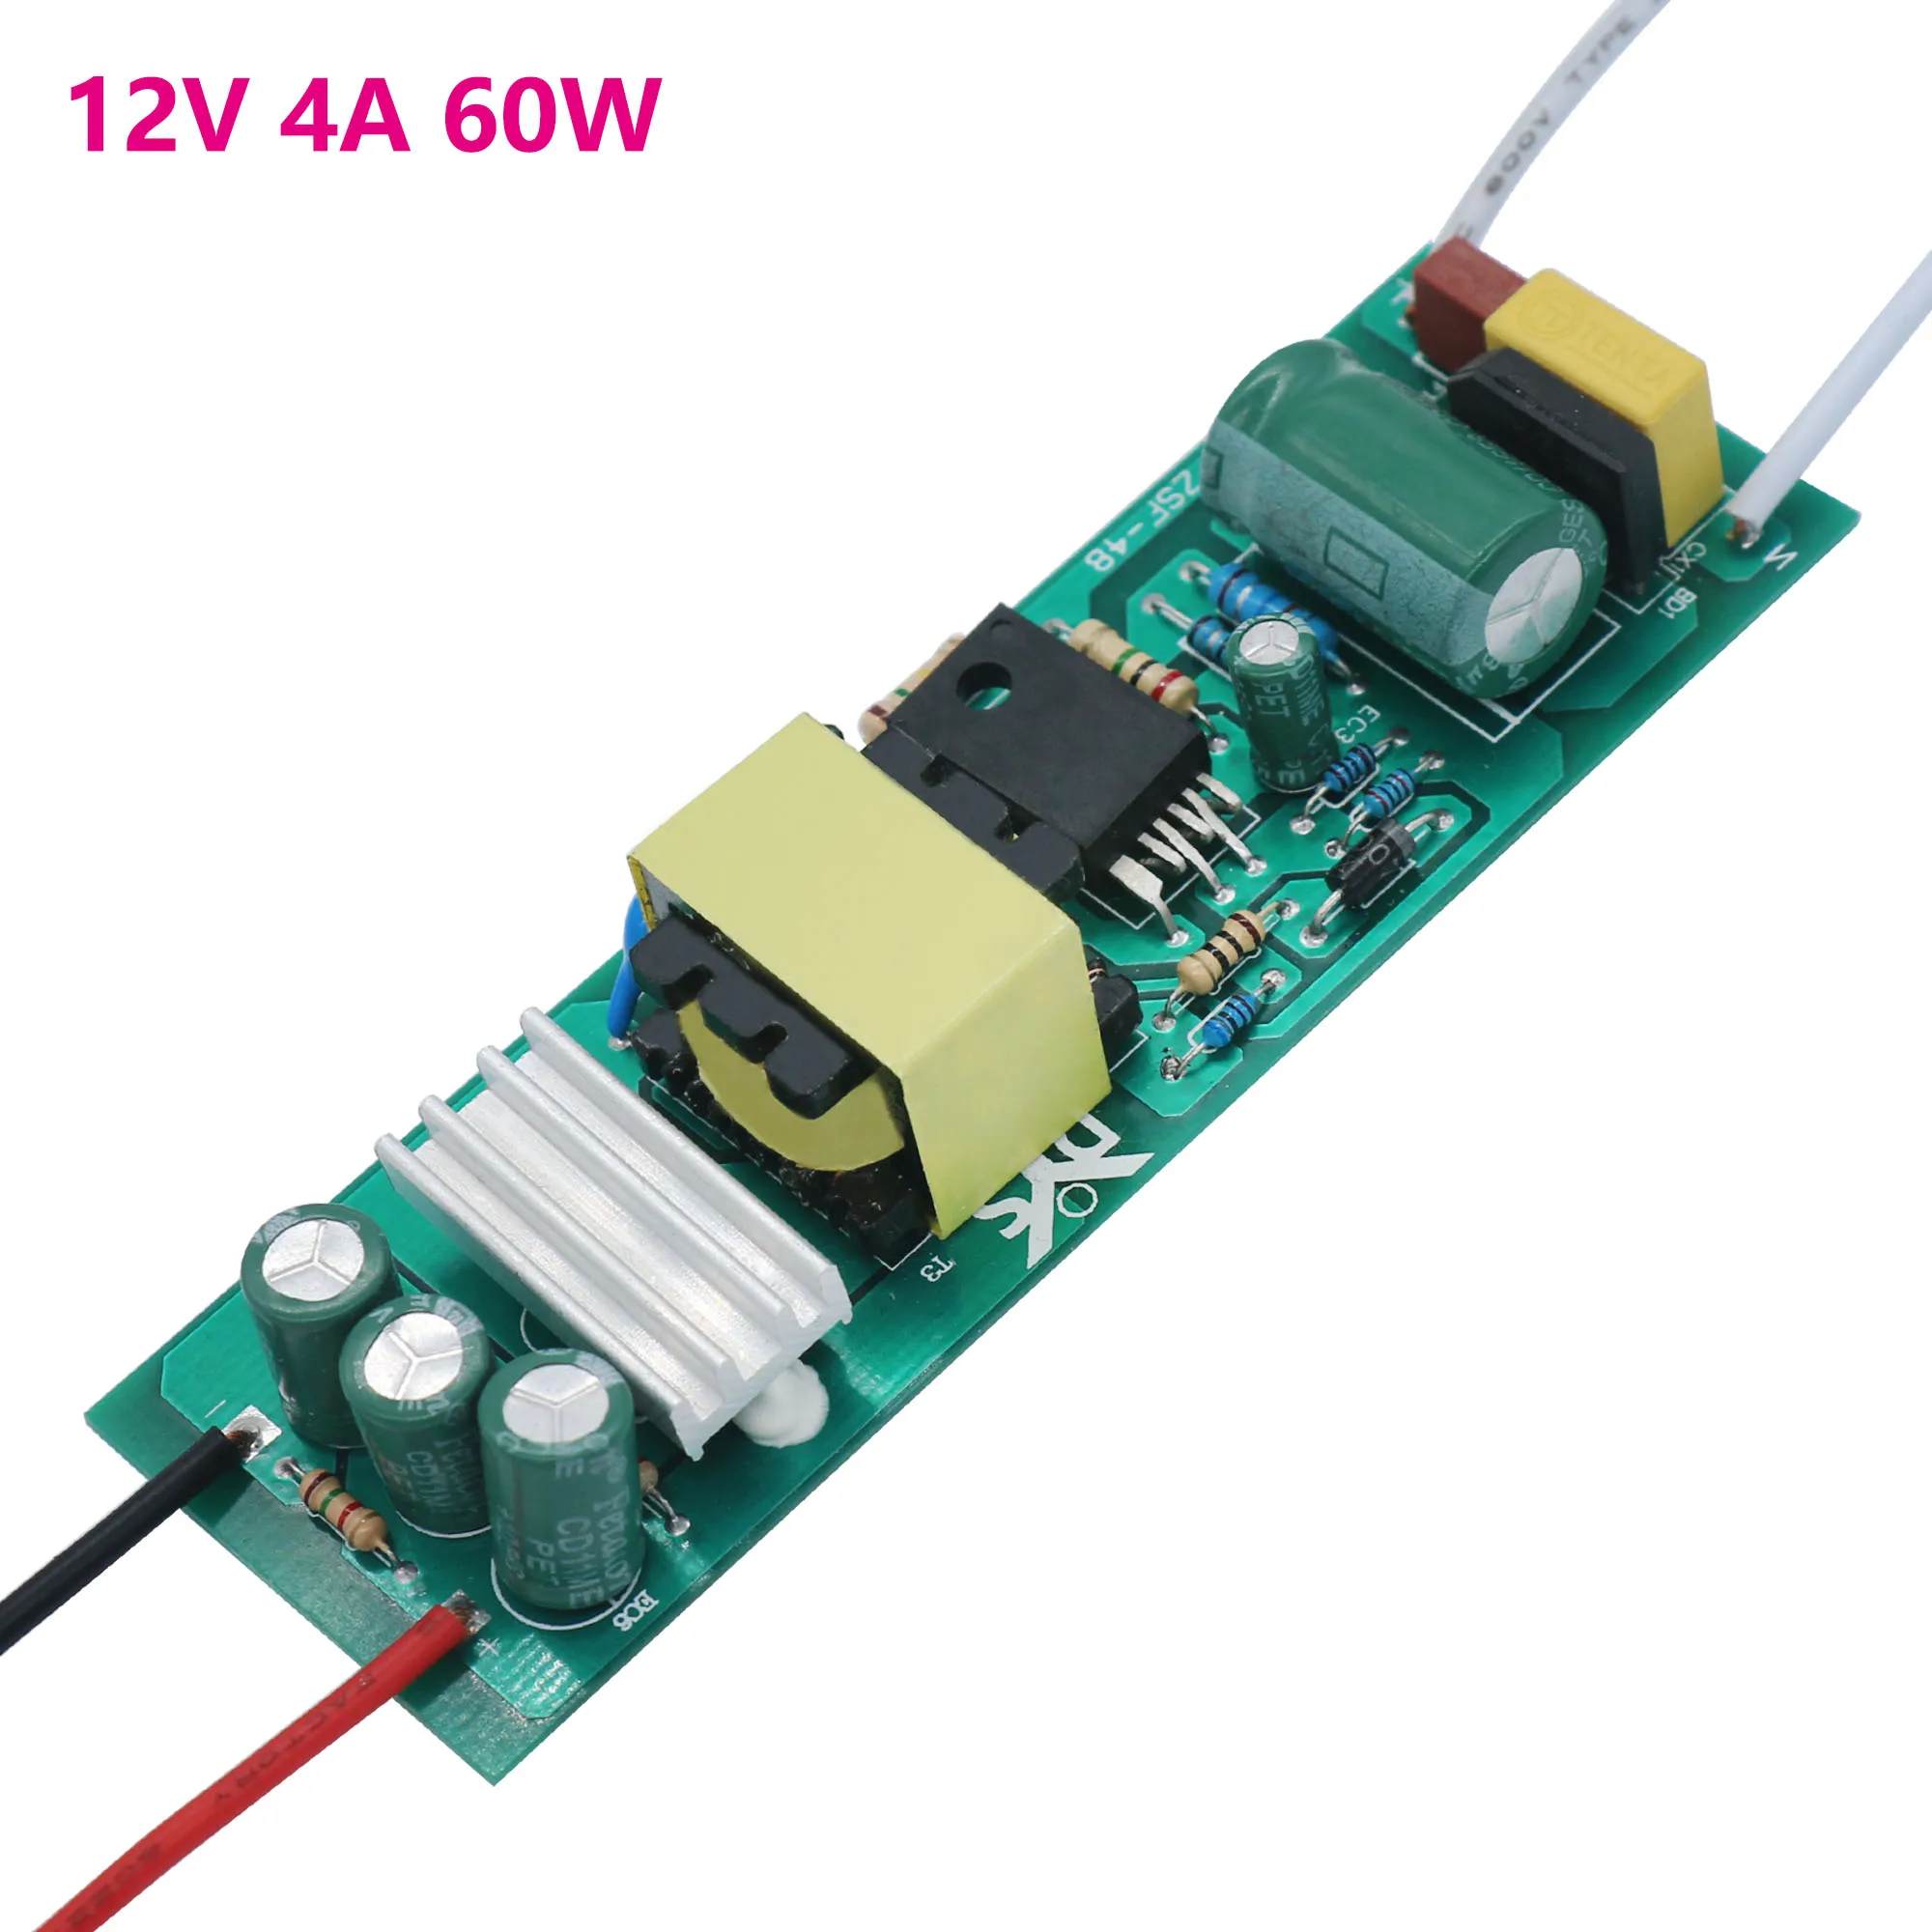 Transformateur pour LED, Driver de LED Dehner Elektronik SE 15-12VF (12VDC)  à tension constante 15 W 1.25 A 12 V/DC - Conrad Electronic France